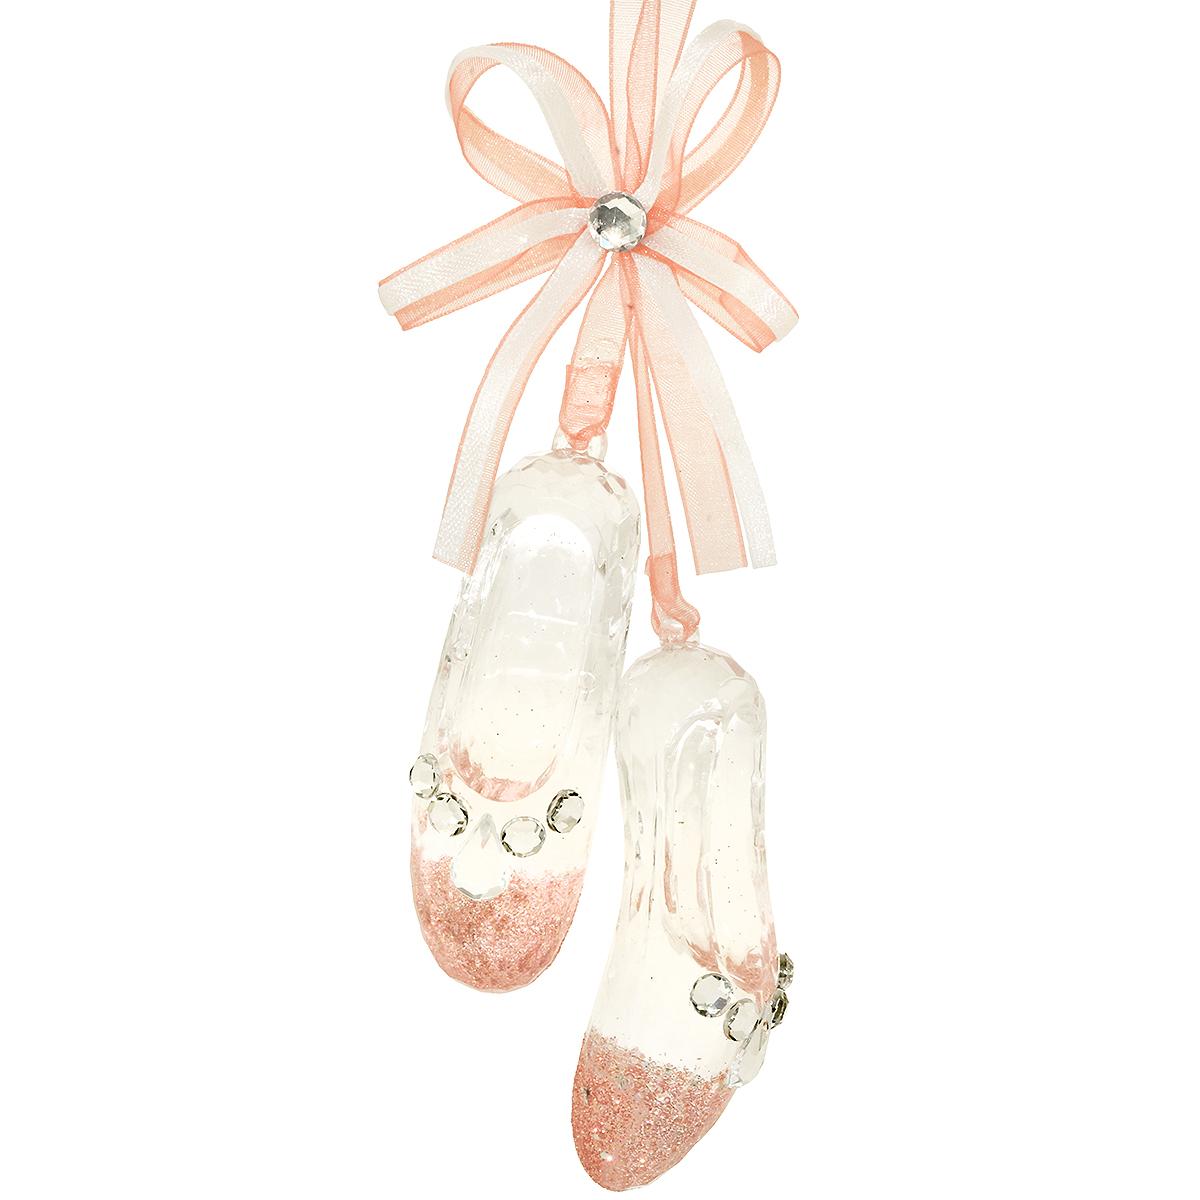 Ballet Slippers Ornament